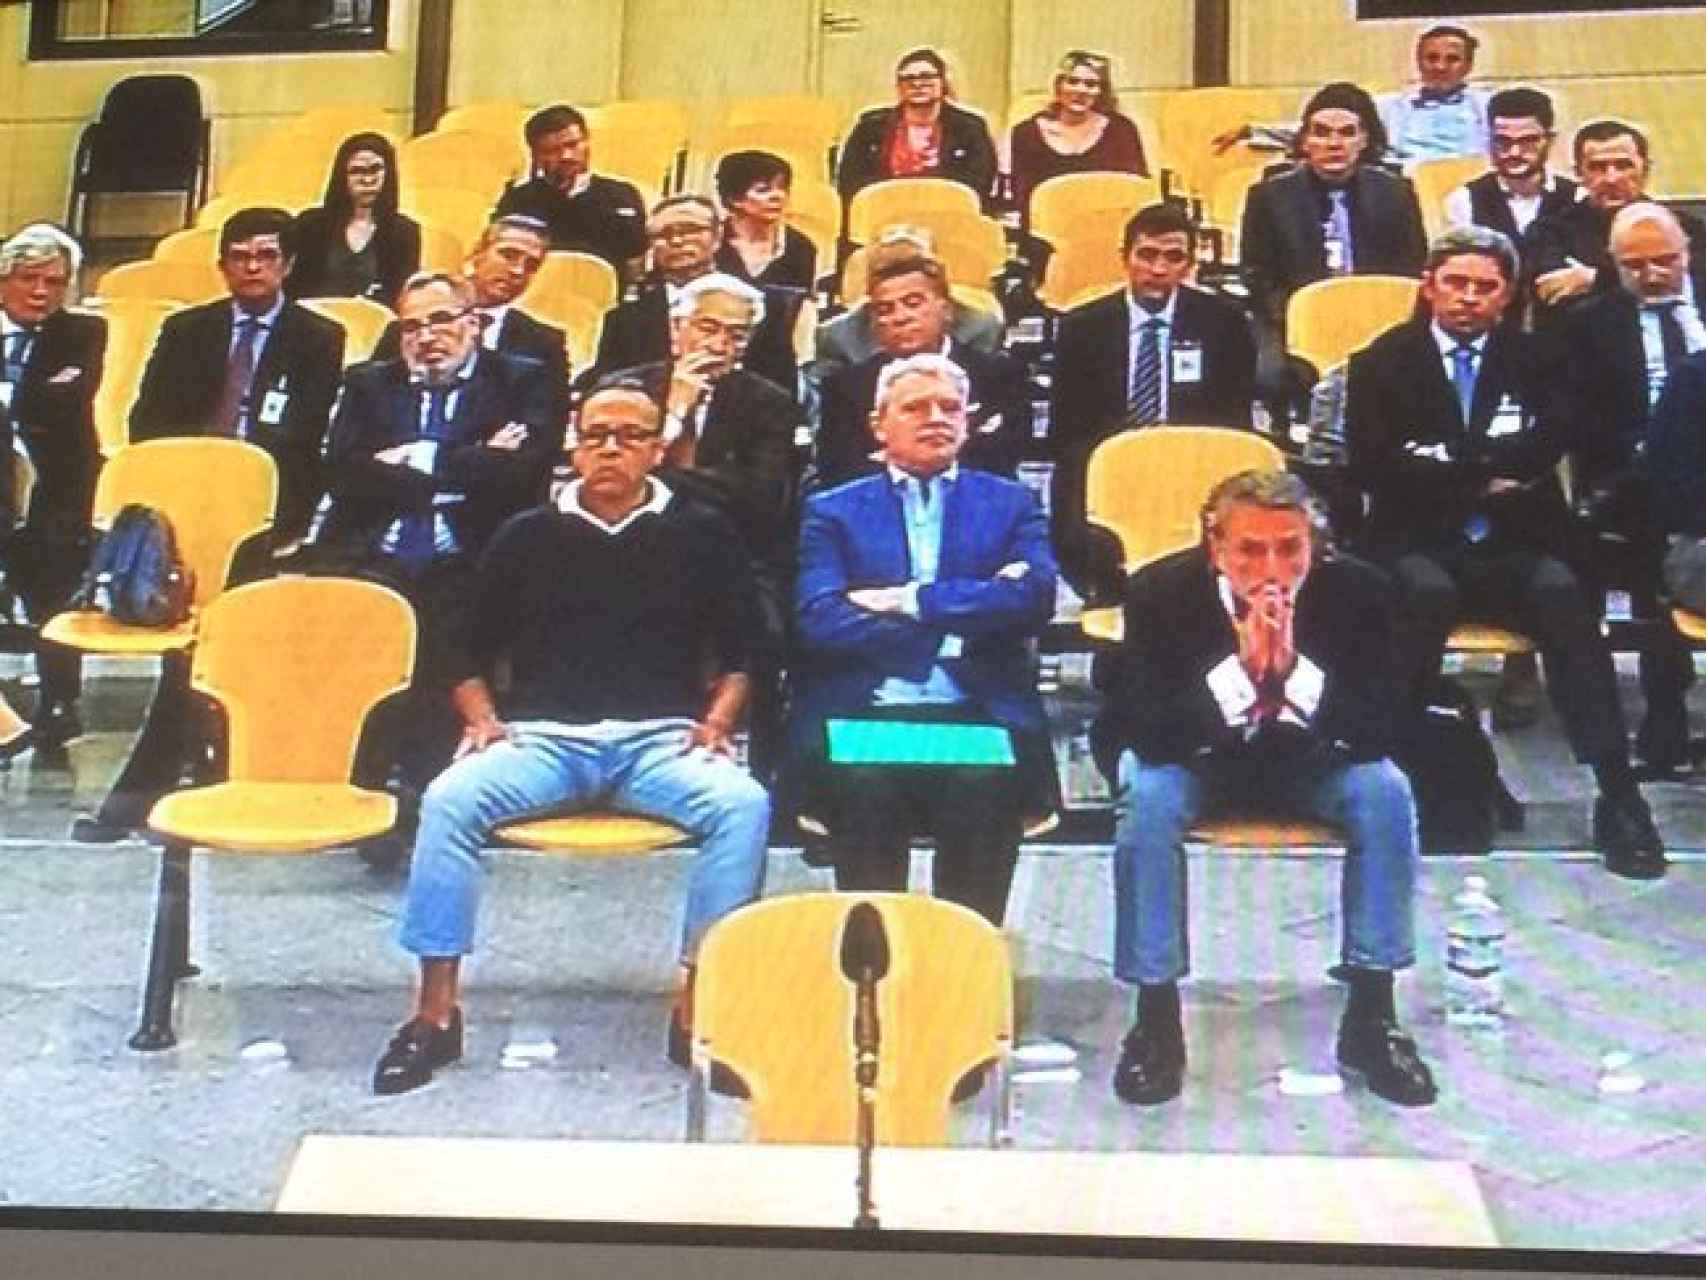 Los acusados del caso Gürtel Valencia en la última sesión del juicio celebrado en la Audiencia Nacional